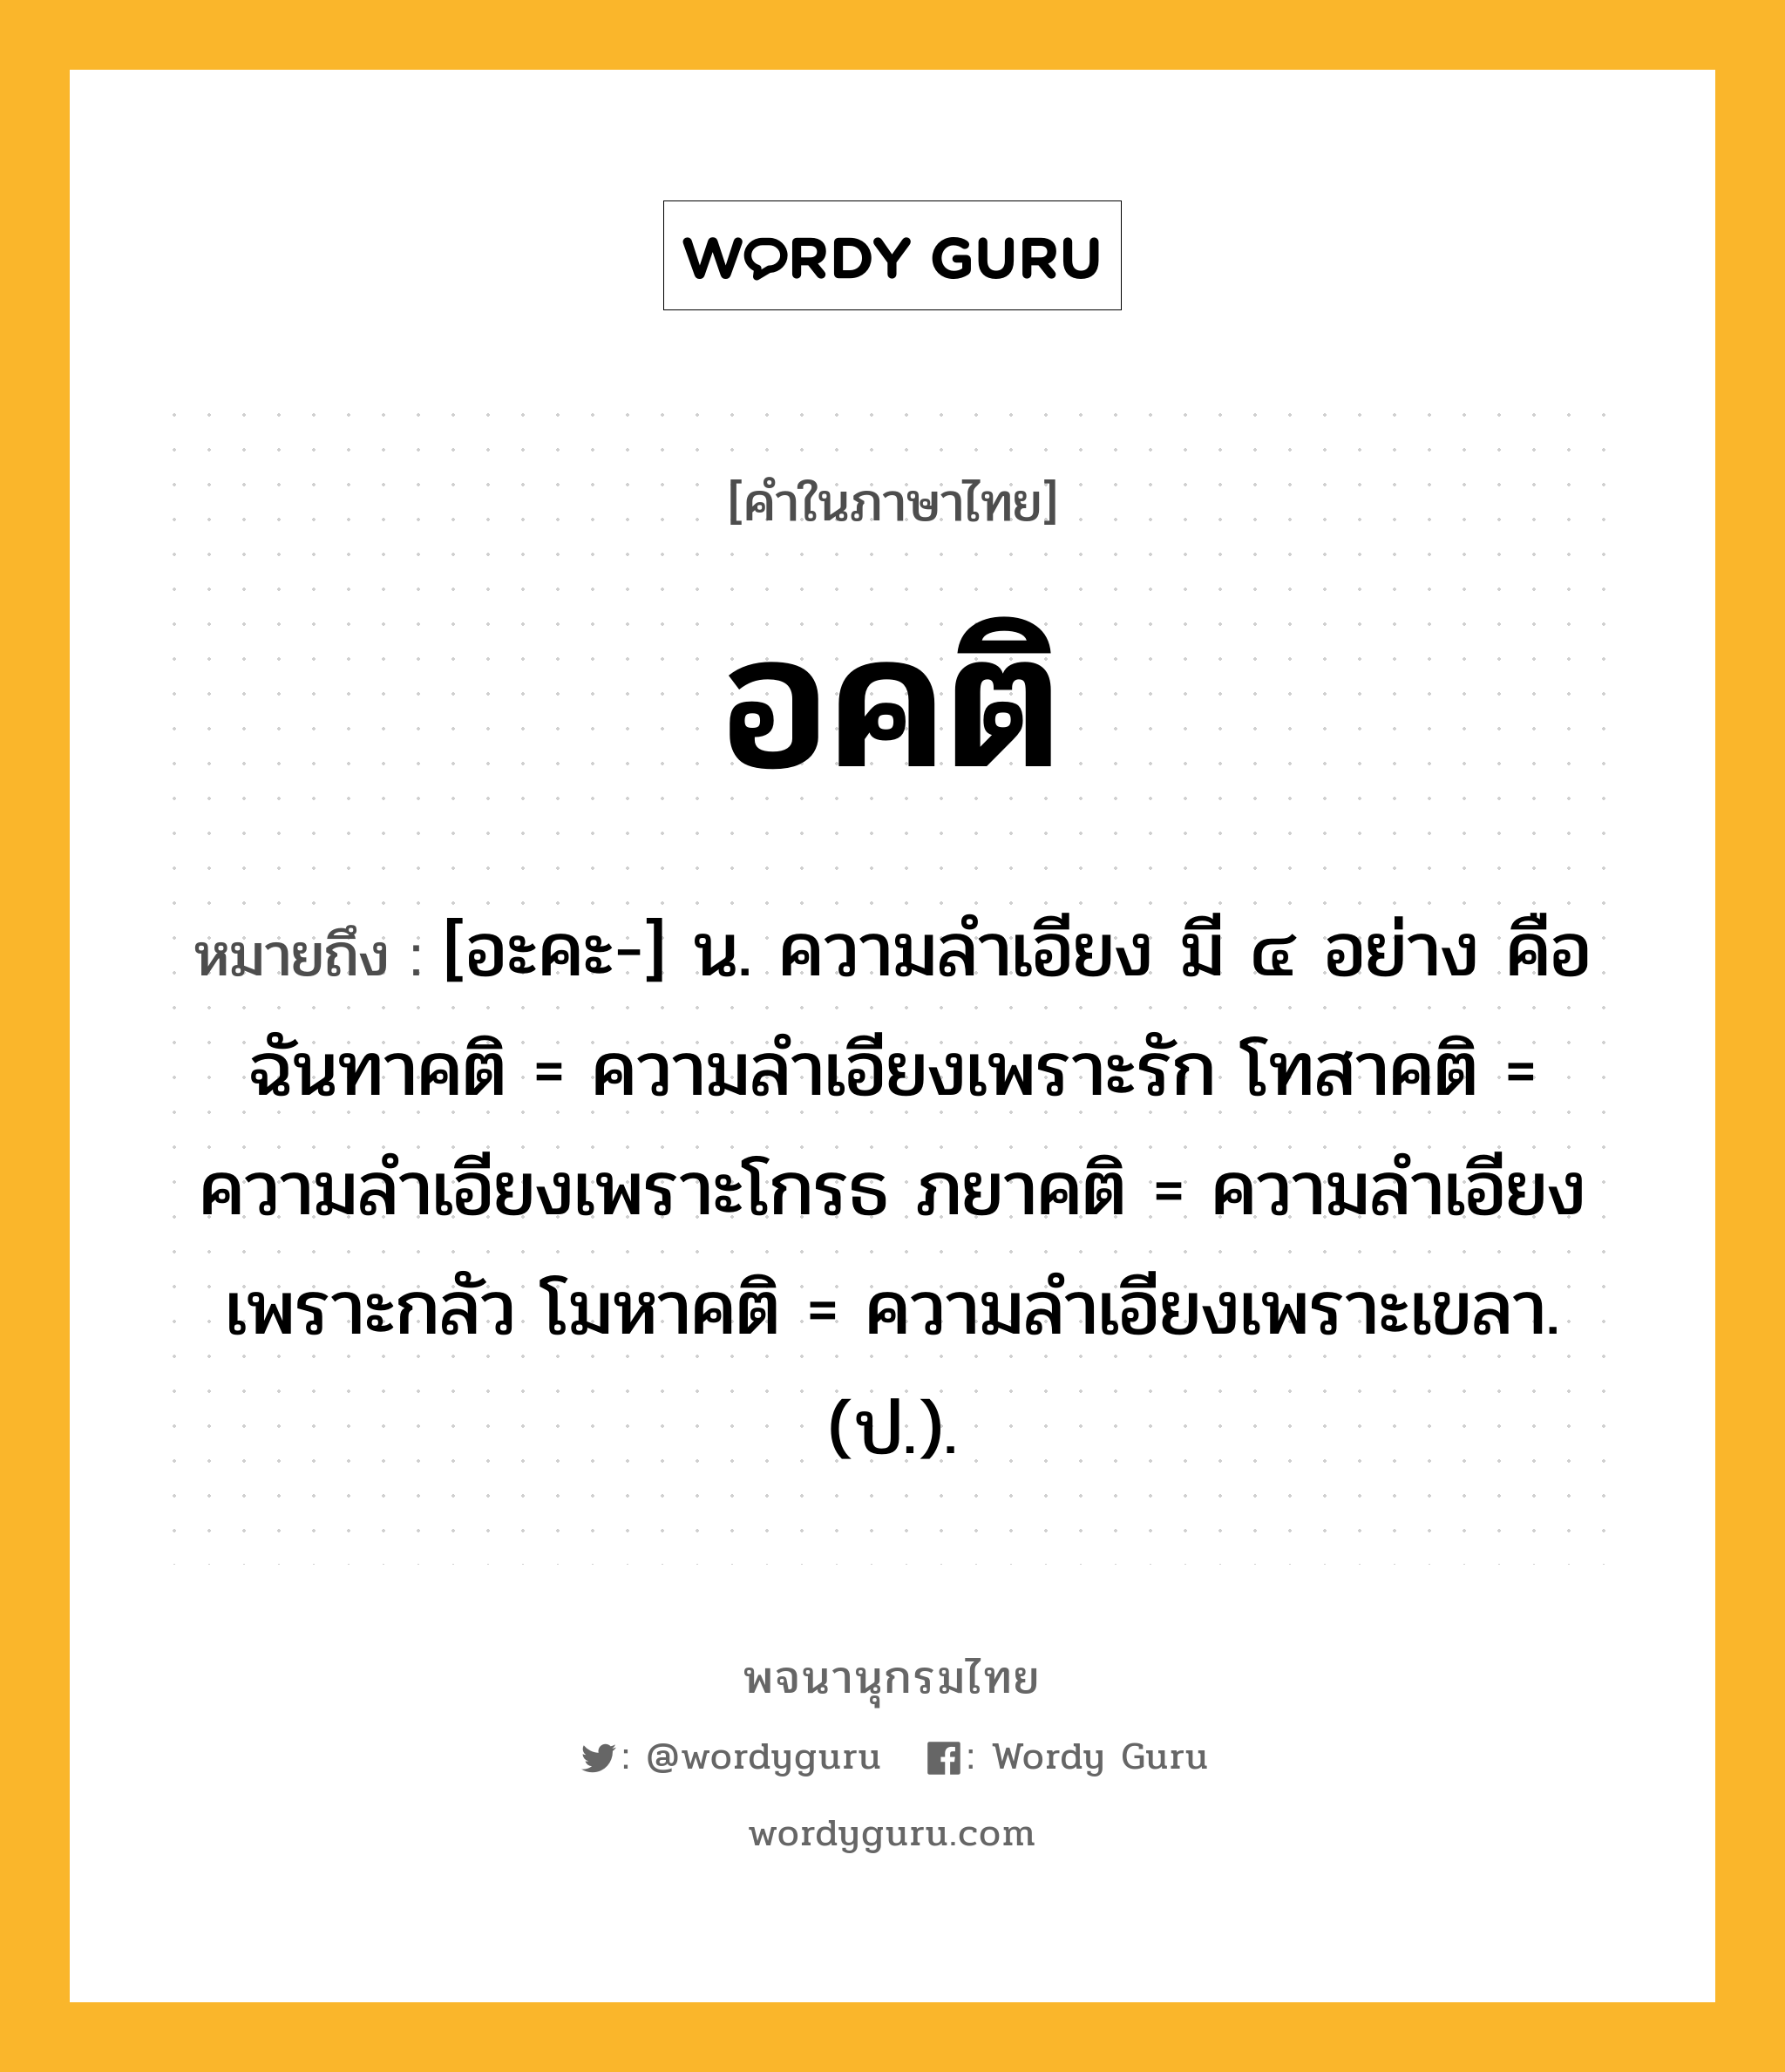 อคติ ความหมาย หมายถึงอะไร?, คำในภาษาไทย อคติ หมายถึง [อะคะ-] น. ความลําเอียง มี ๔ อย่าง คือ ฉันทาคติ = ความลําเอียงเพราะรัก โทสาคติ = ความลําเอียงเพราะโกรธ ภยาคติ = ความลําเอียงเพราะกลัว โมหาคติ = ความลําเอียงเพราะเขลา. (ป.).